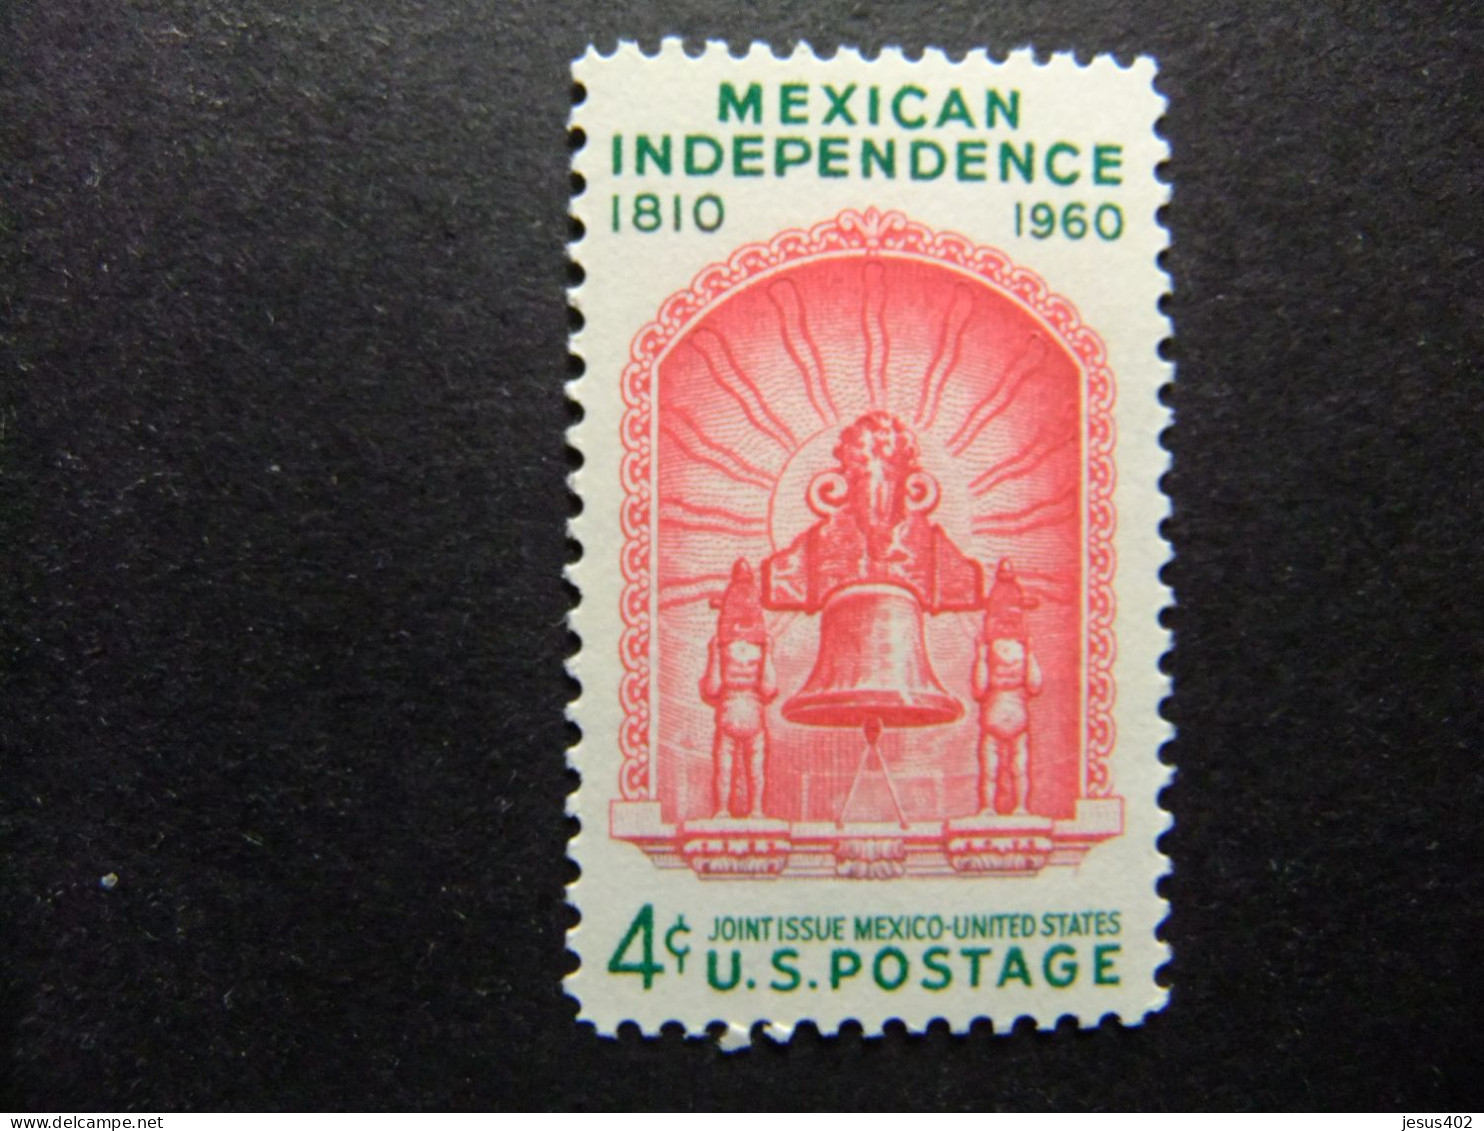 ESTADOS UNIDOS / ETATS-UNIS D'AMERIQUE 1960 / 150 ANIV. DE INDEPENDENCIA MEXICANA YVERT 692 ** MNH - Neufs